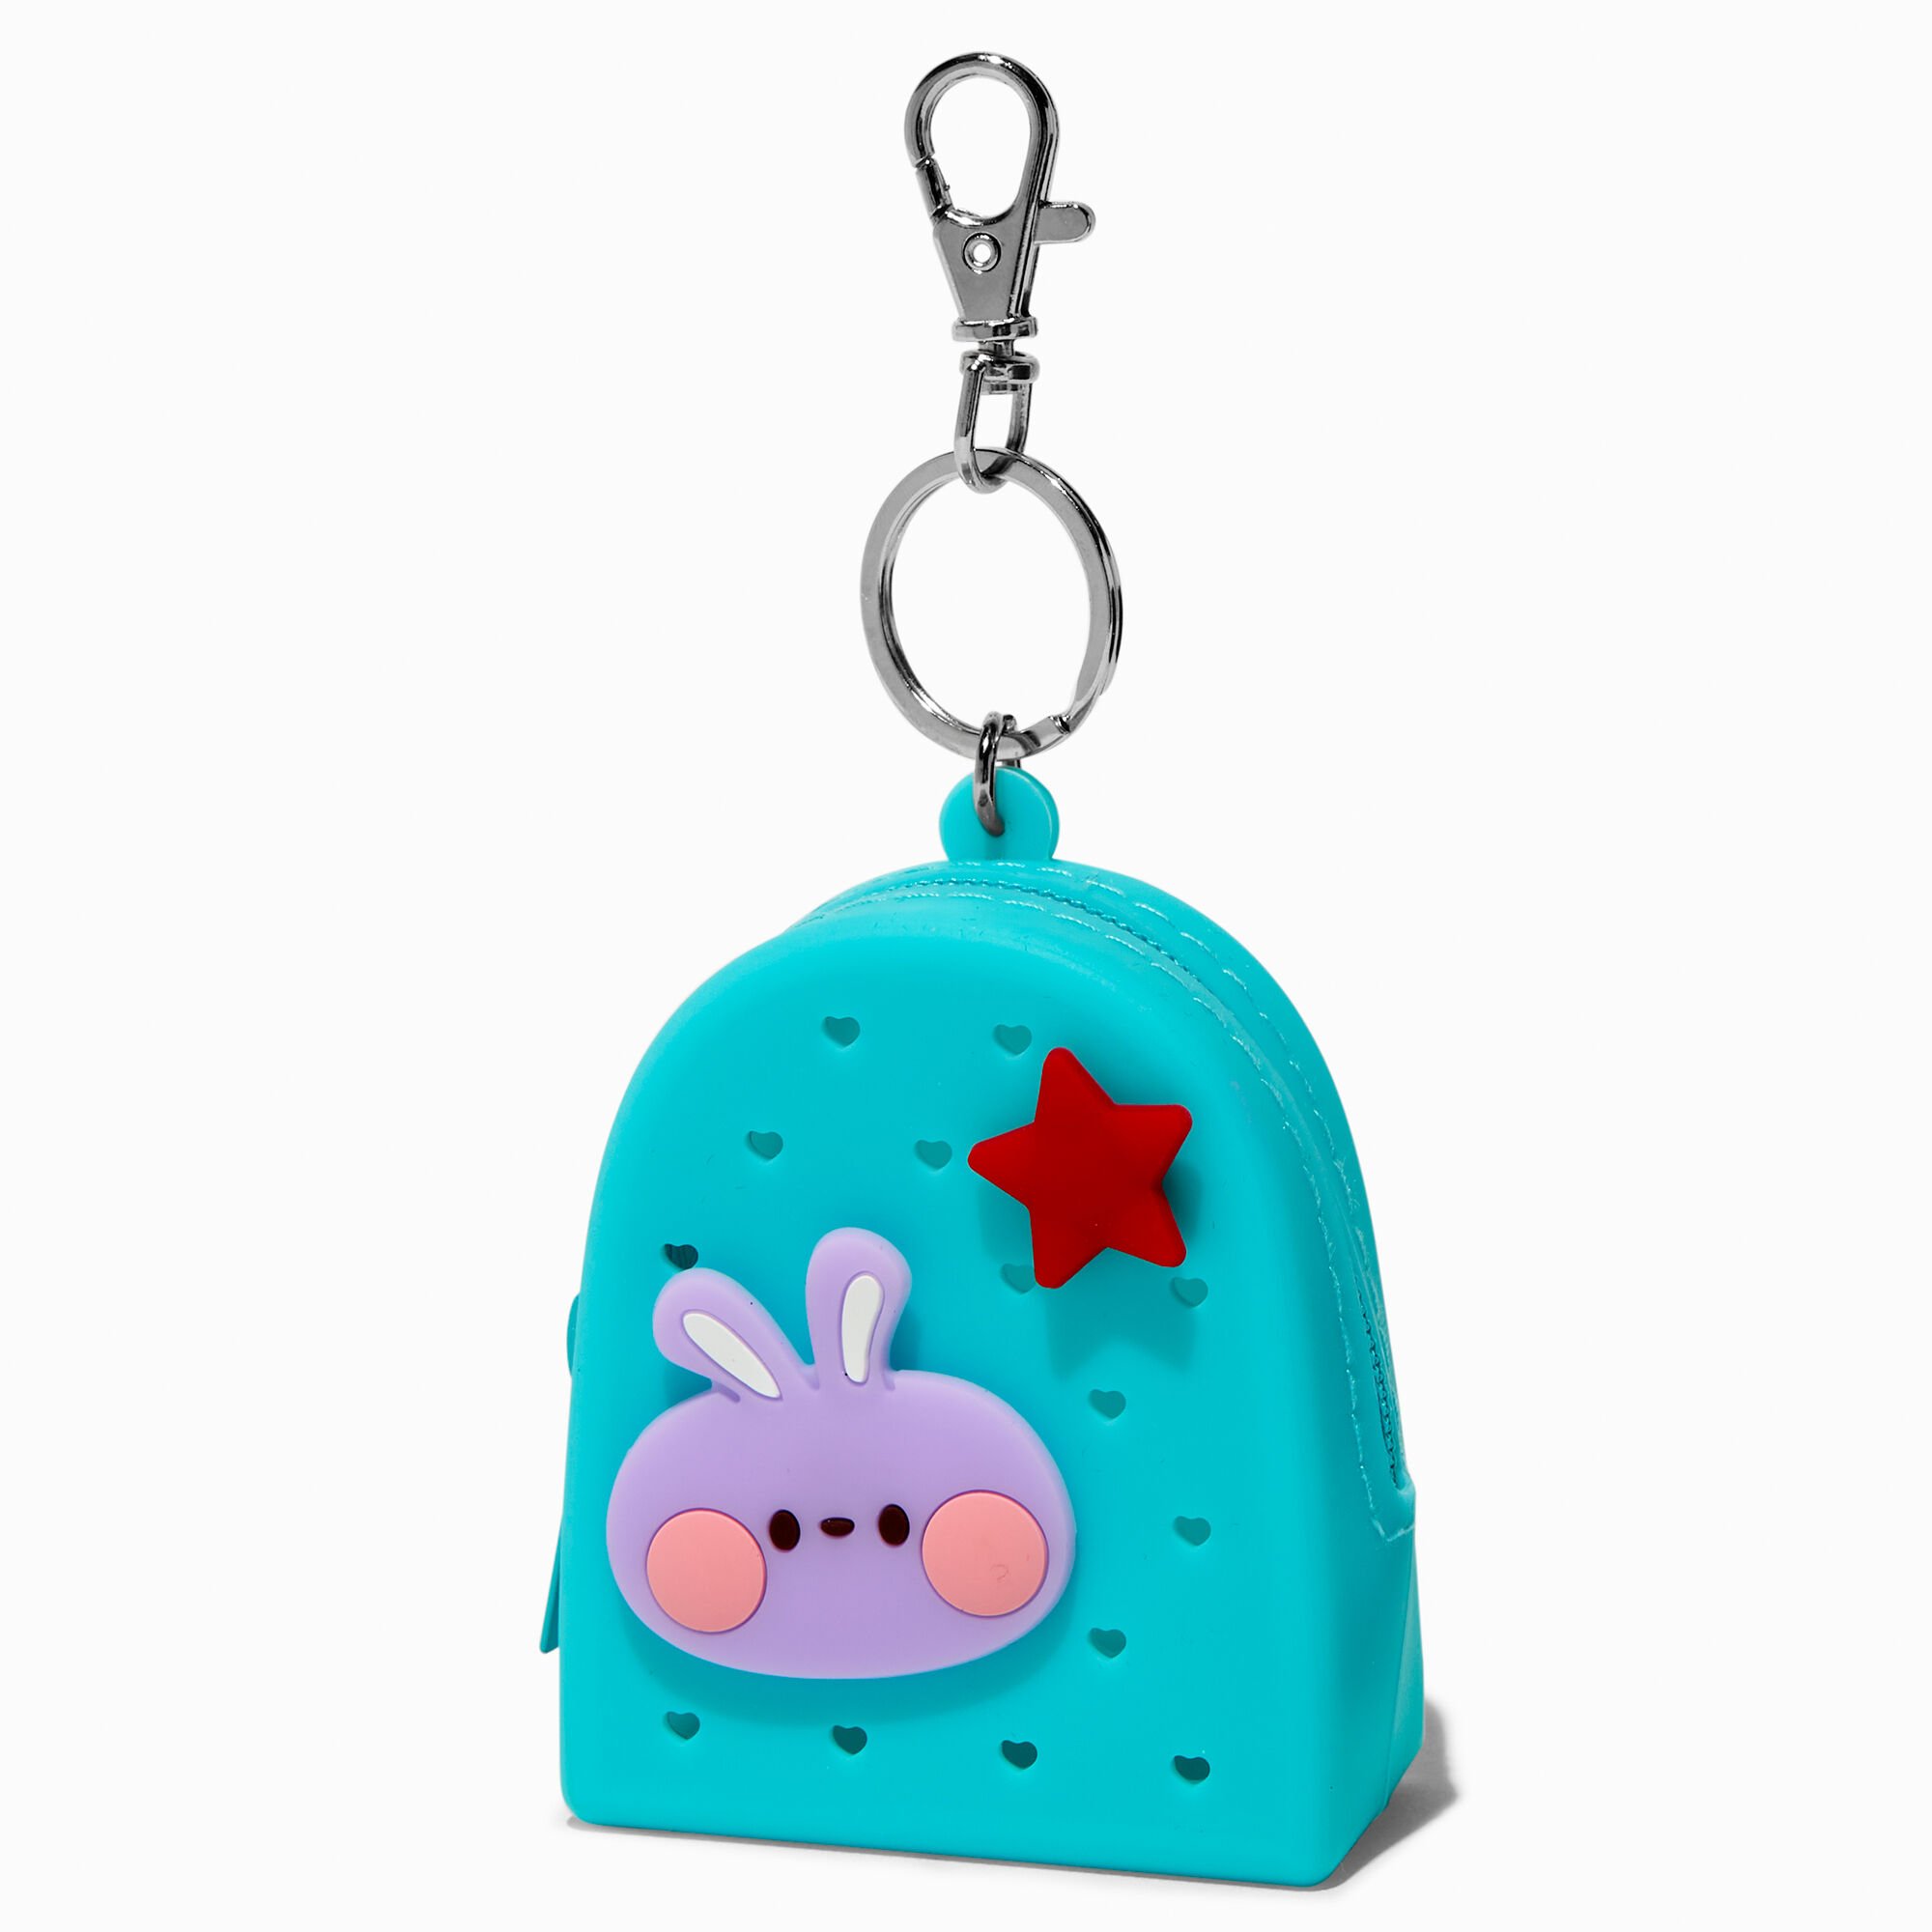 Claire's Porte-clés mini sac à dos en silicone bleu